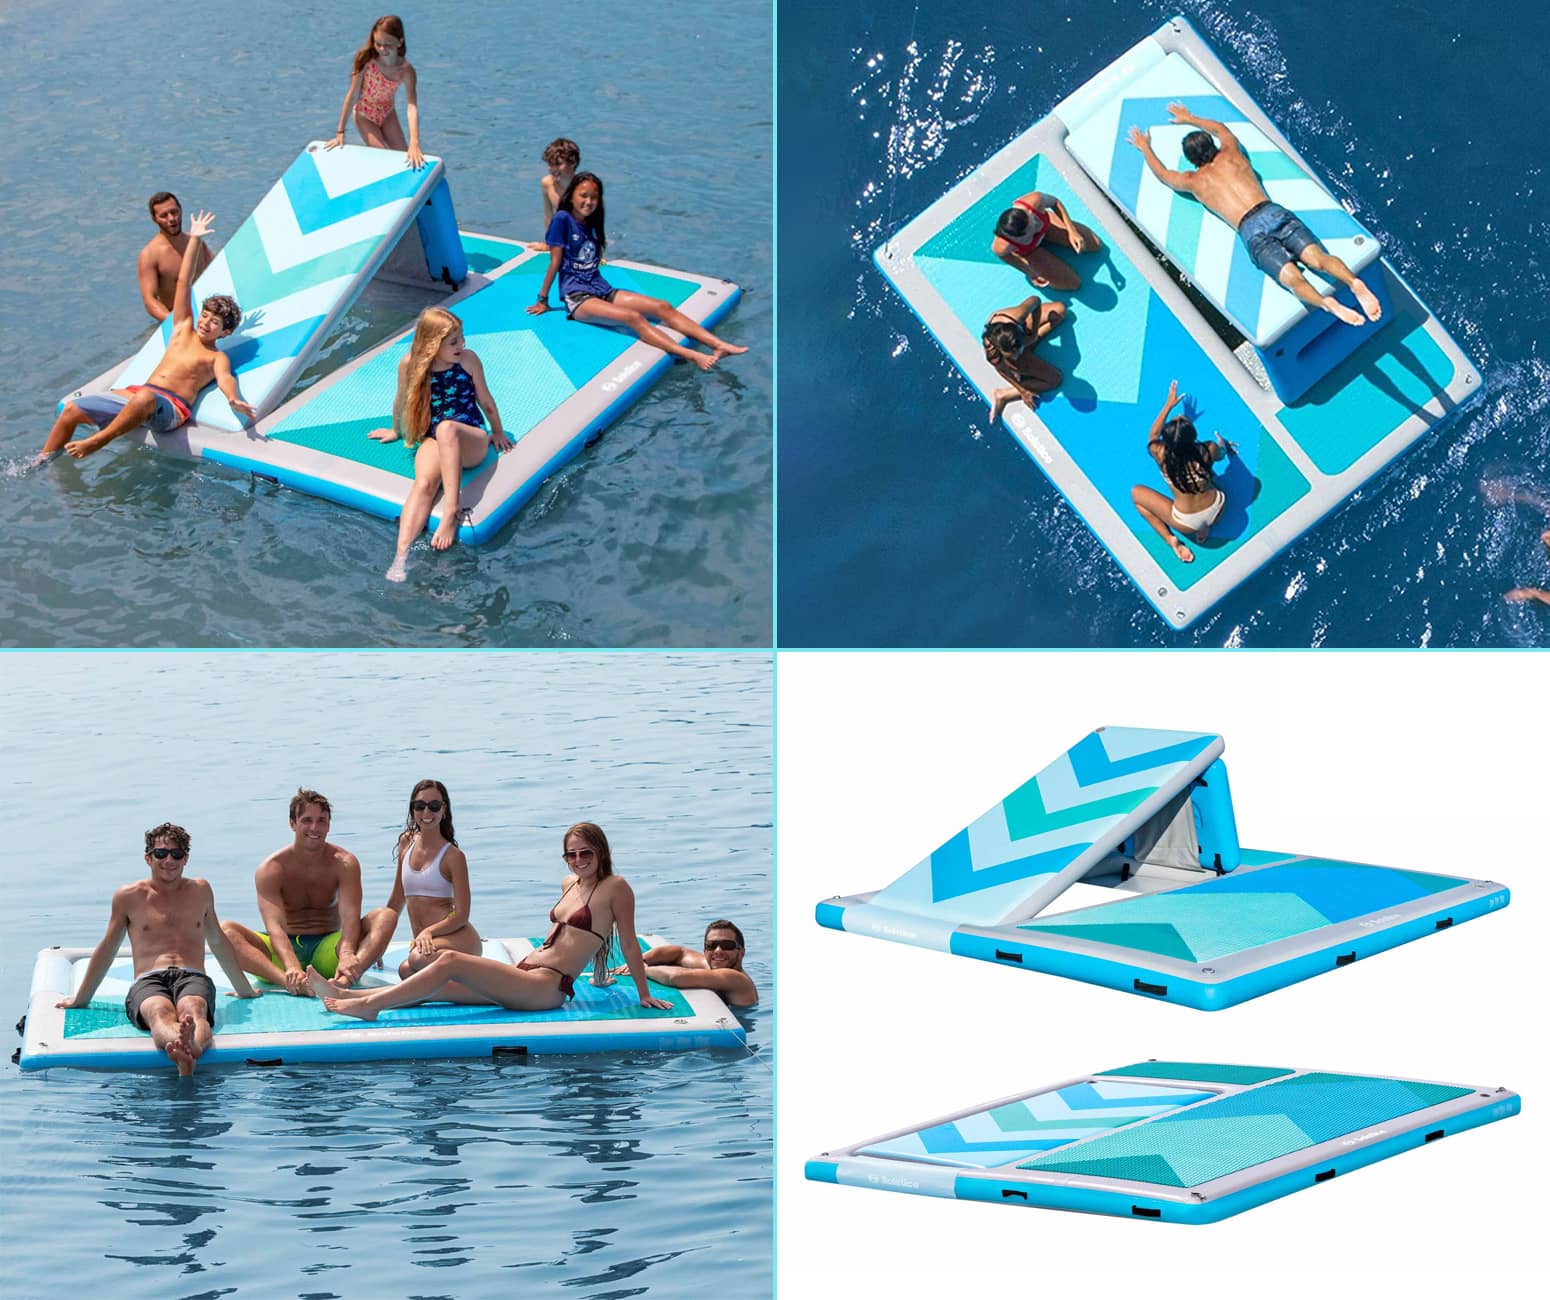 Solstice Inflatable Floating Dock Platform With Built-In Slide